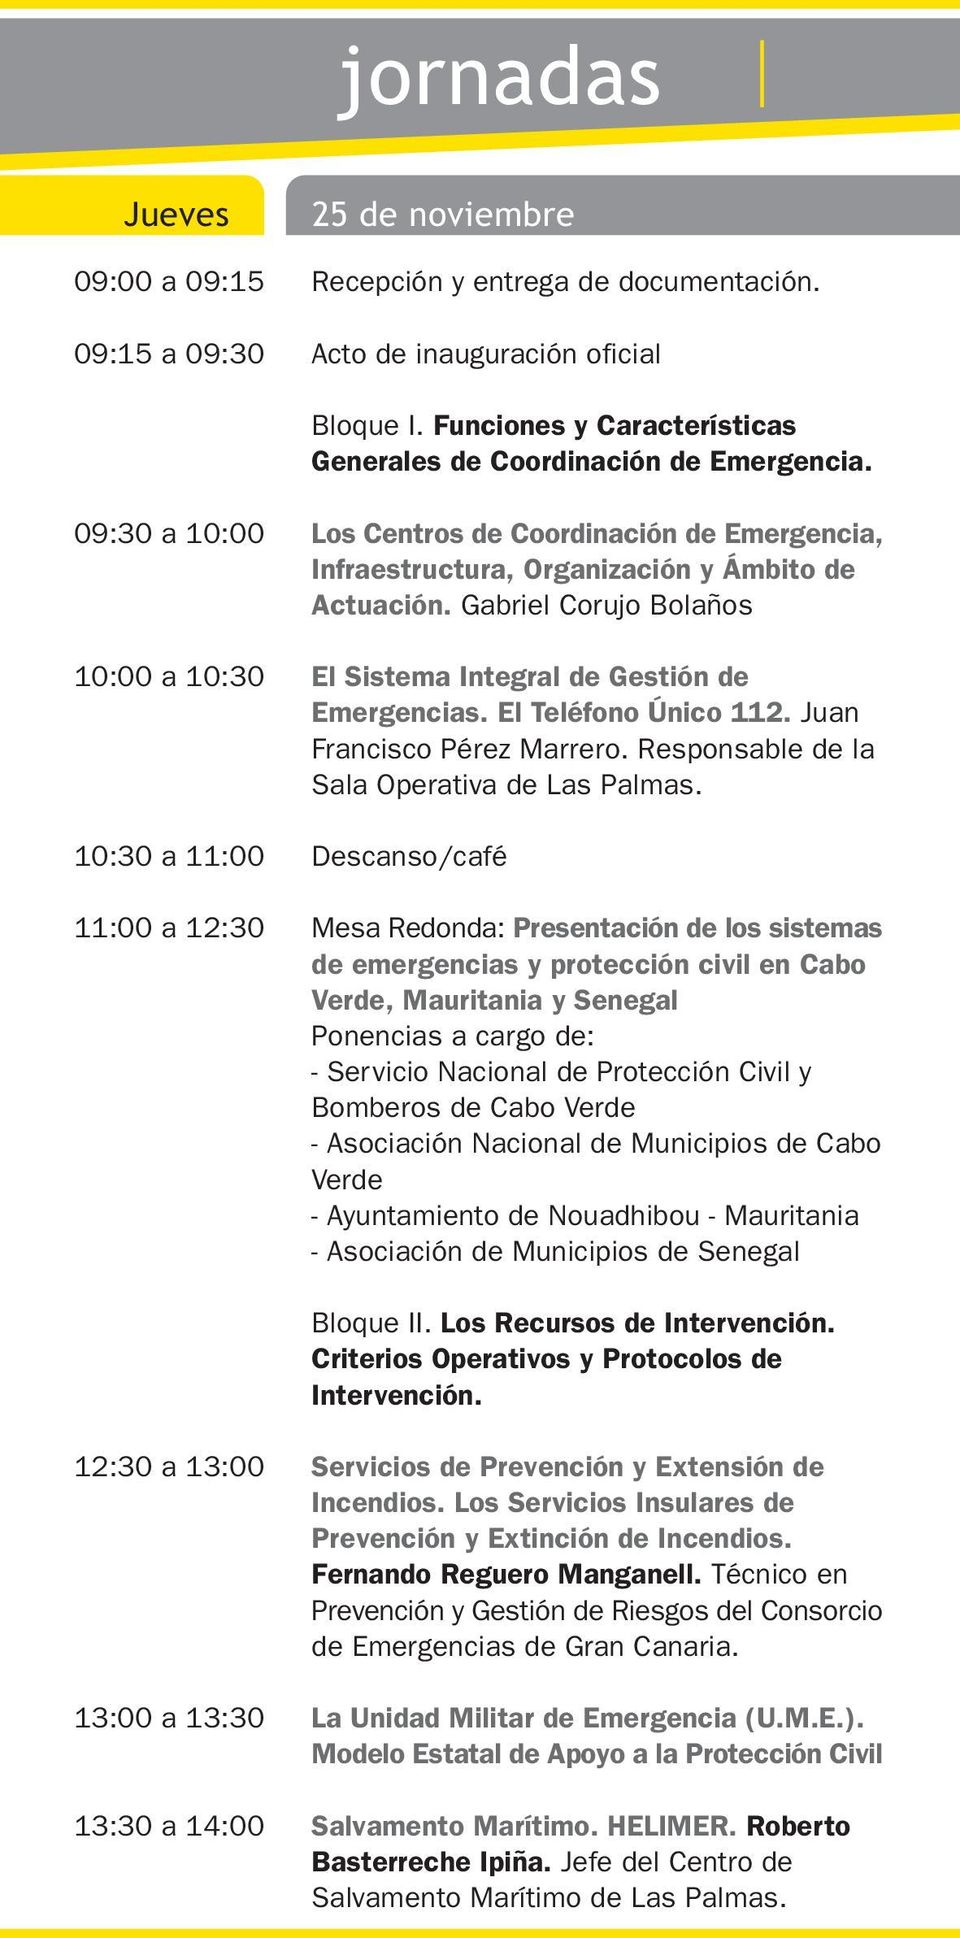 09:30 a 10:00 10:00 a 10:30 10:30 a 11:00 11:00 a 12:30 Los Centros de Coordinación de Emergencia, Infraestructura, Organización y Ámbito de Actuación.